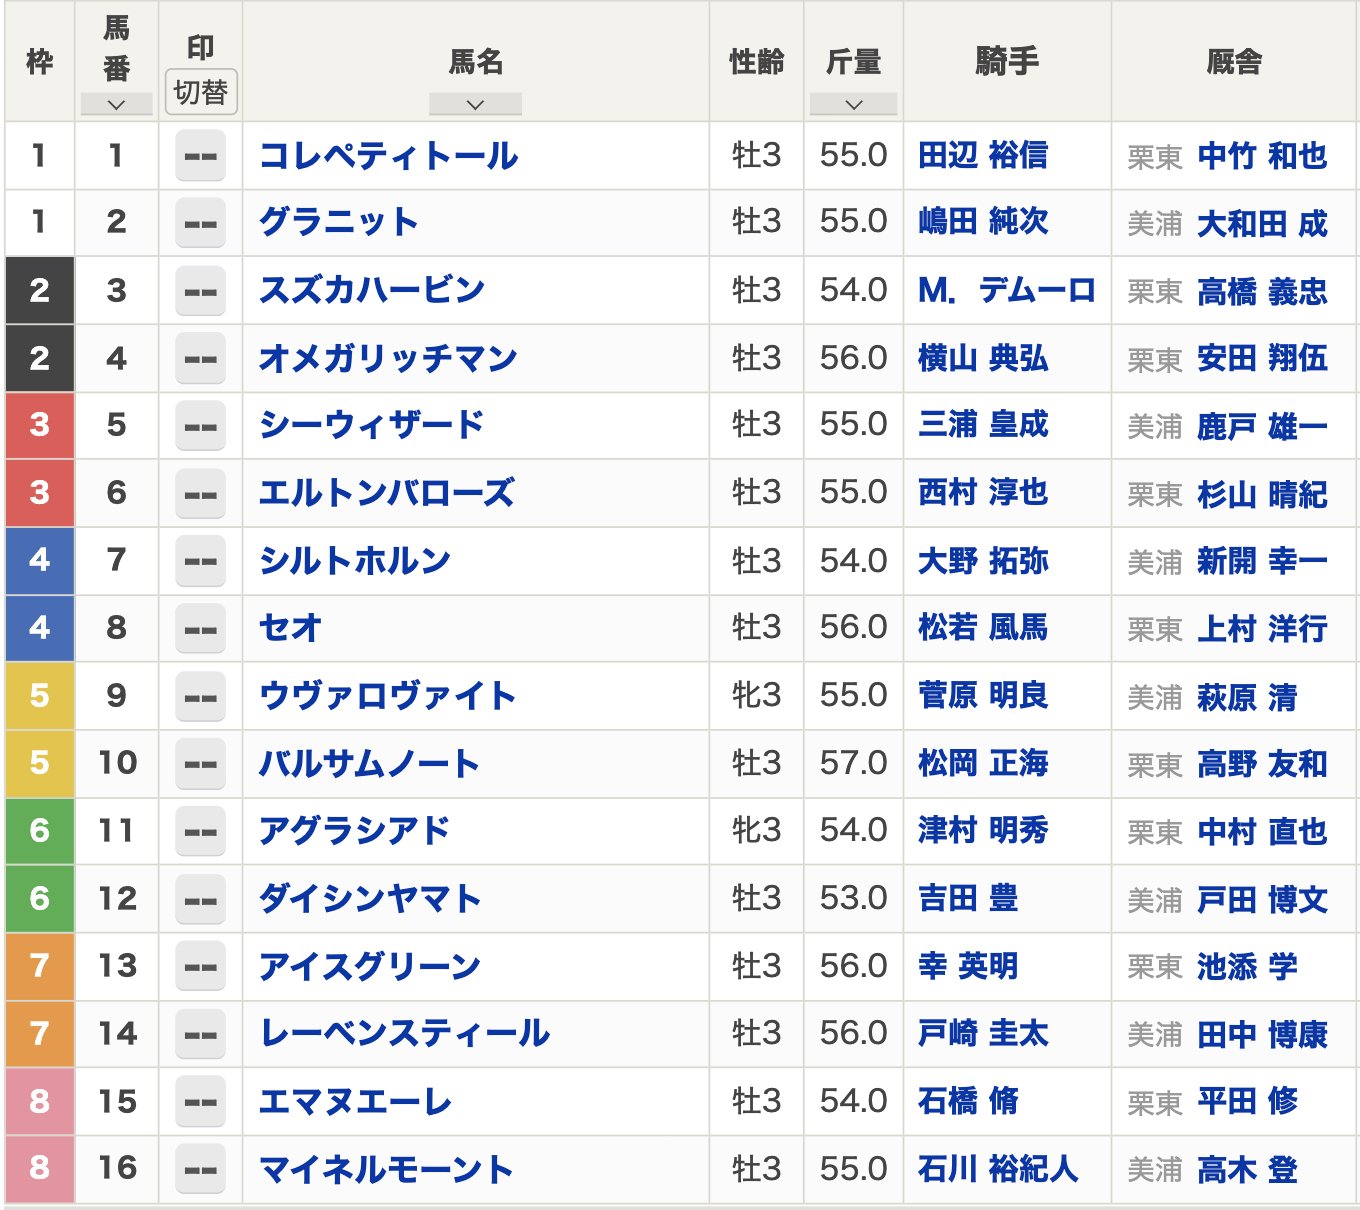 【ラジオNIKKEI賞2023枠順】全16頭 レーベンスティールは7枠14番 アイスグリーンは7枠13番からスタート